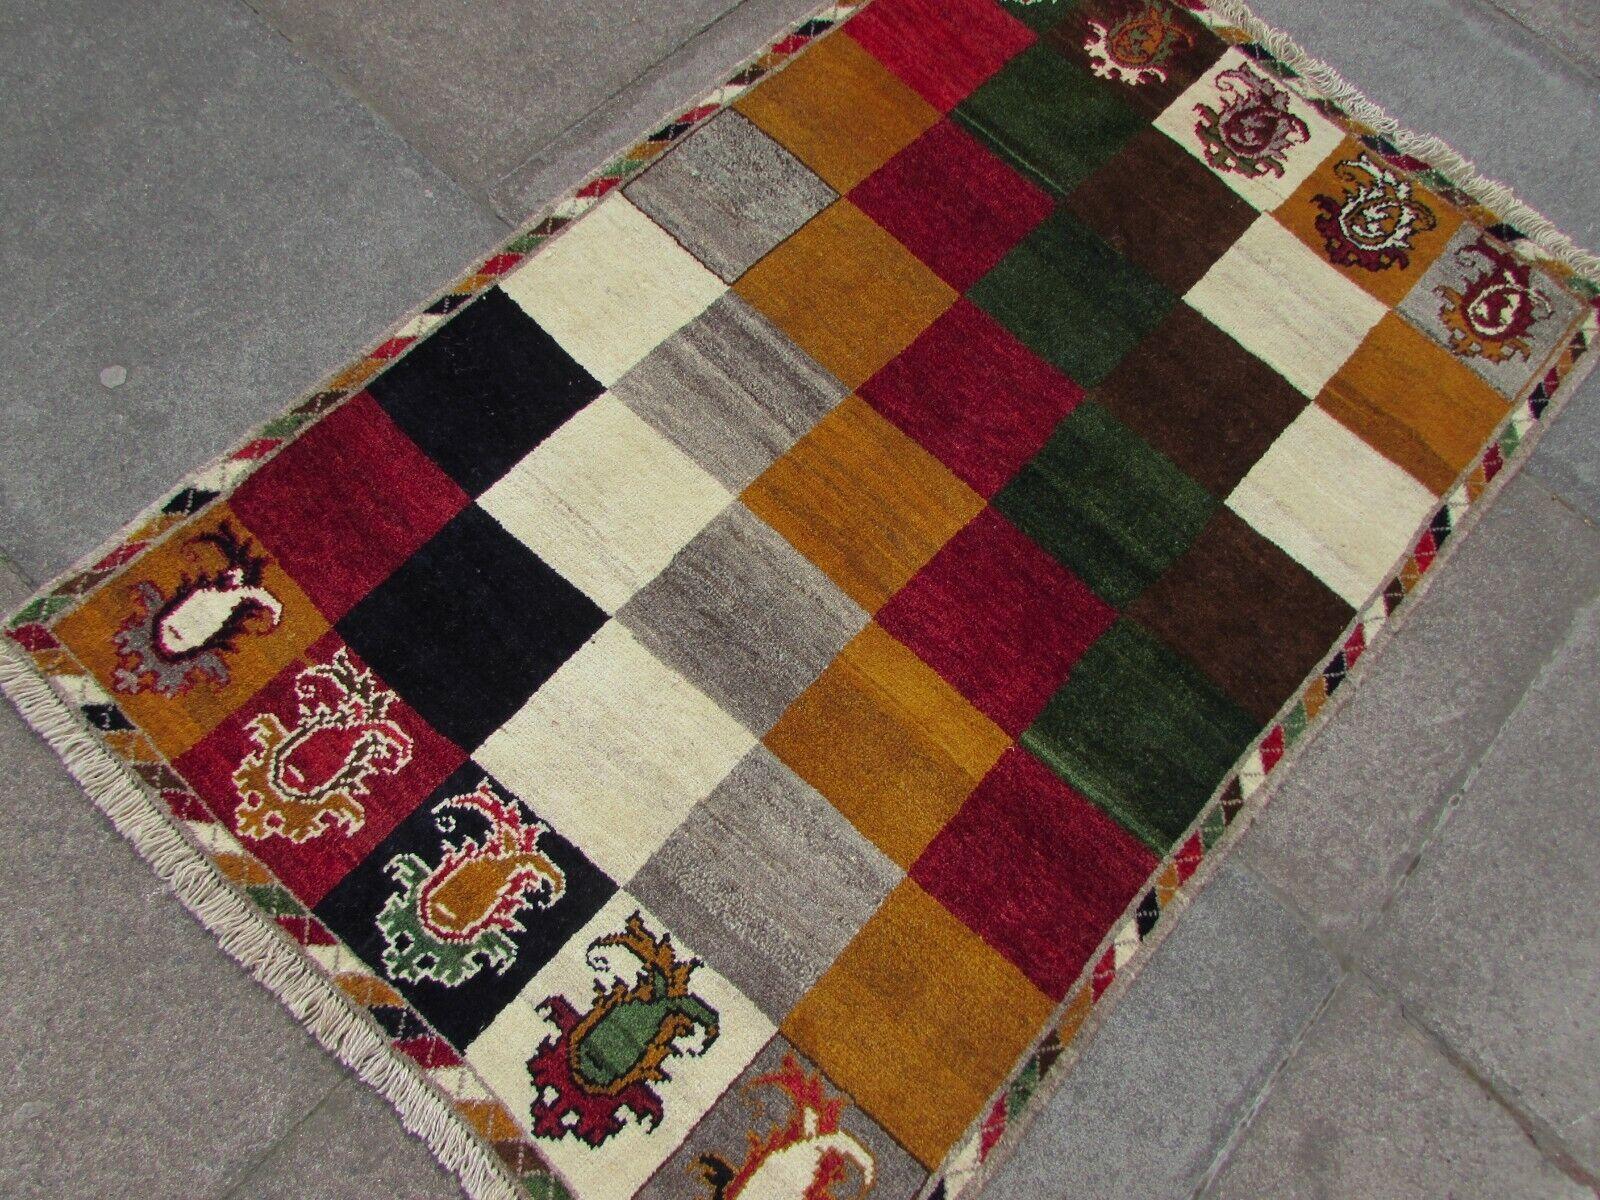 Dieser handgefertigte Gabbeh-Teppich im persischen Vintage-Stil ist ein schönes Zeugnis der traditionellen persischen Handwerkskunst. Der mit Sorgfalt und Geschick gefertigte Teppich verkörpert das Wesen der persischen Teppichkunst.

Wesentliche